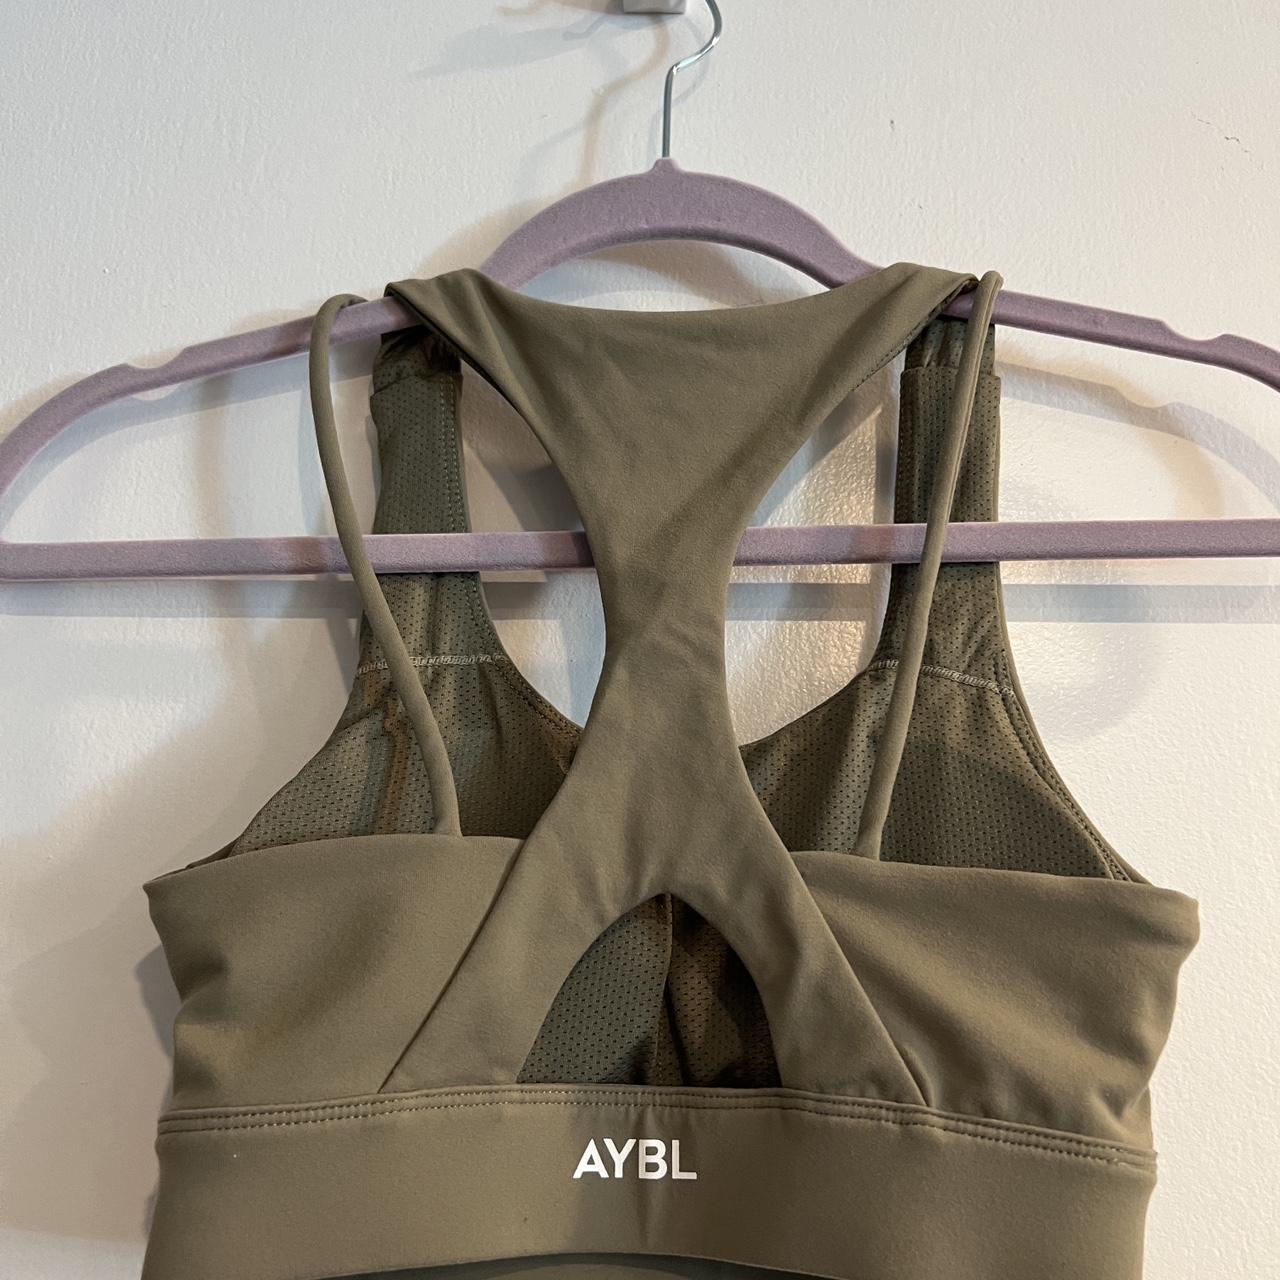 AYBL, Intimates & Sleepwear, Aybl Sports Bra